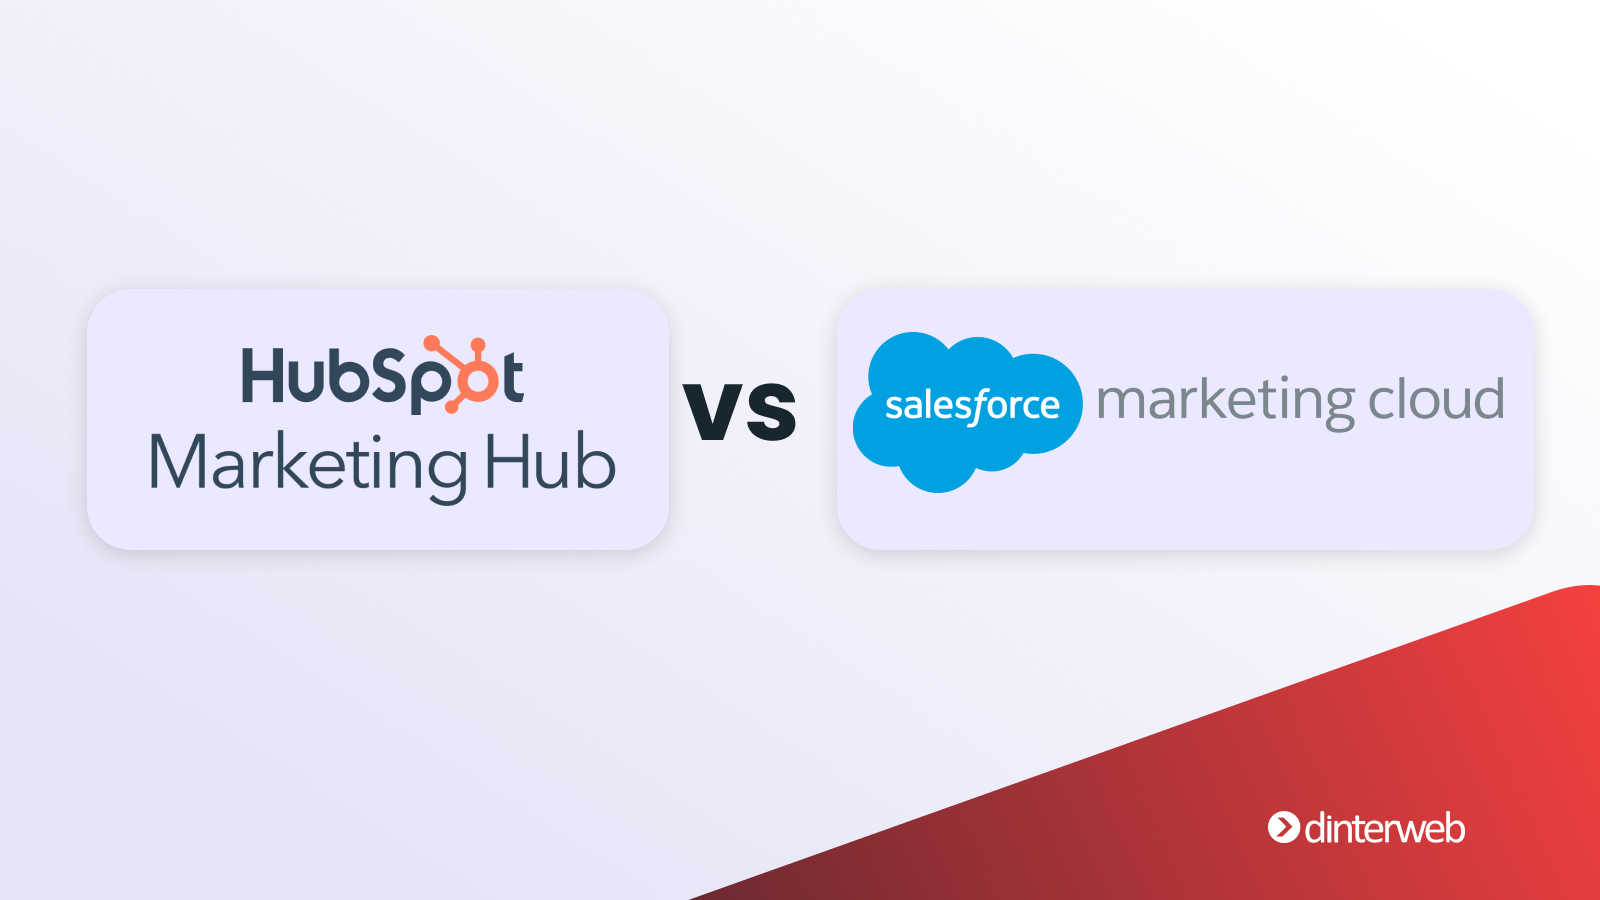 HubSpot Marketing Hub vs. Salesforce Marketing Cloud